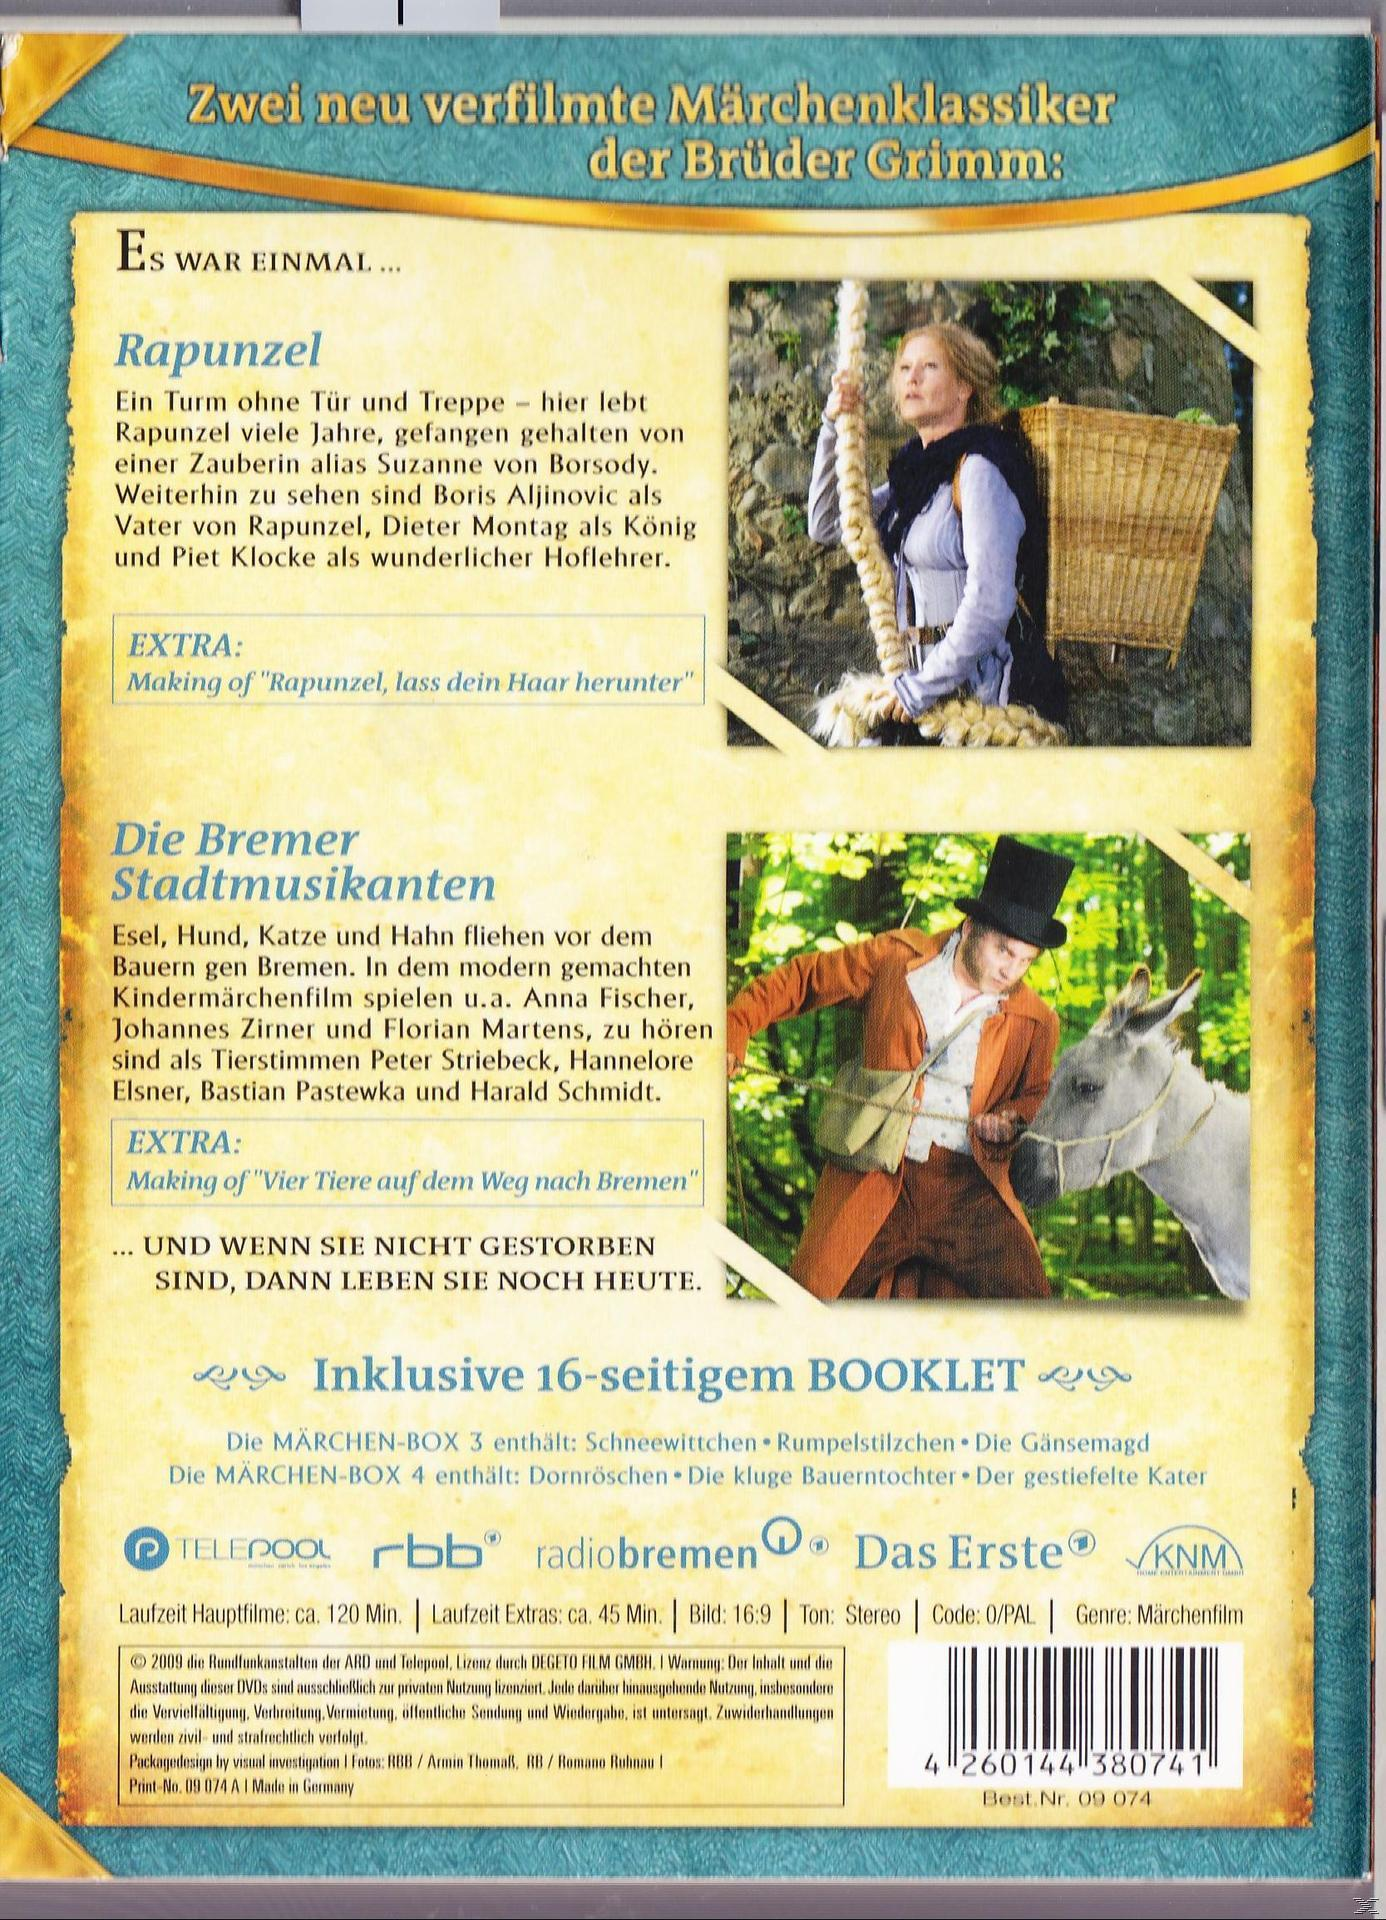 AUF EINEN - STREICH SECHS 5 DVD (O-CARD) MÄRCHENBOX